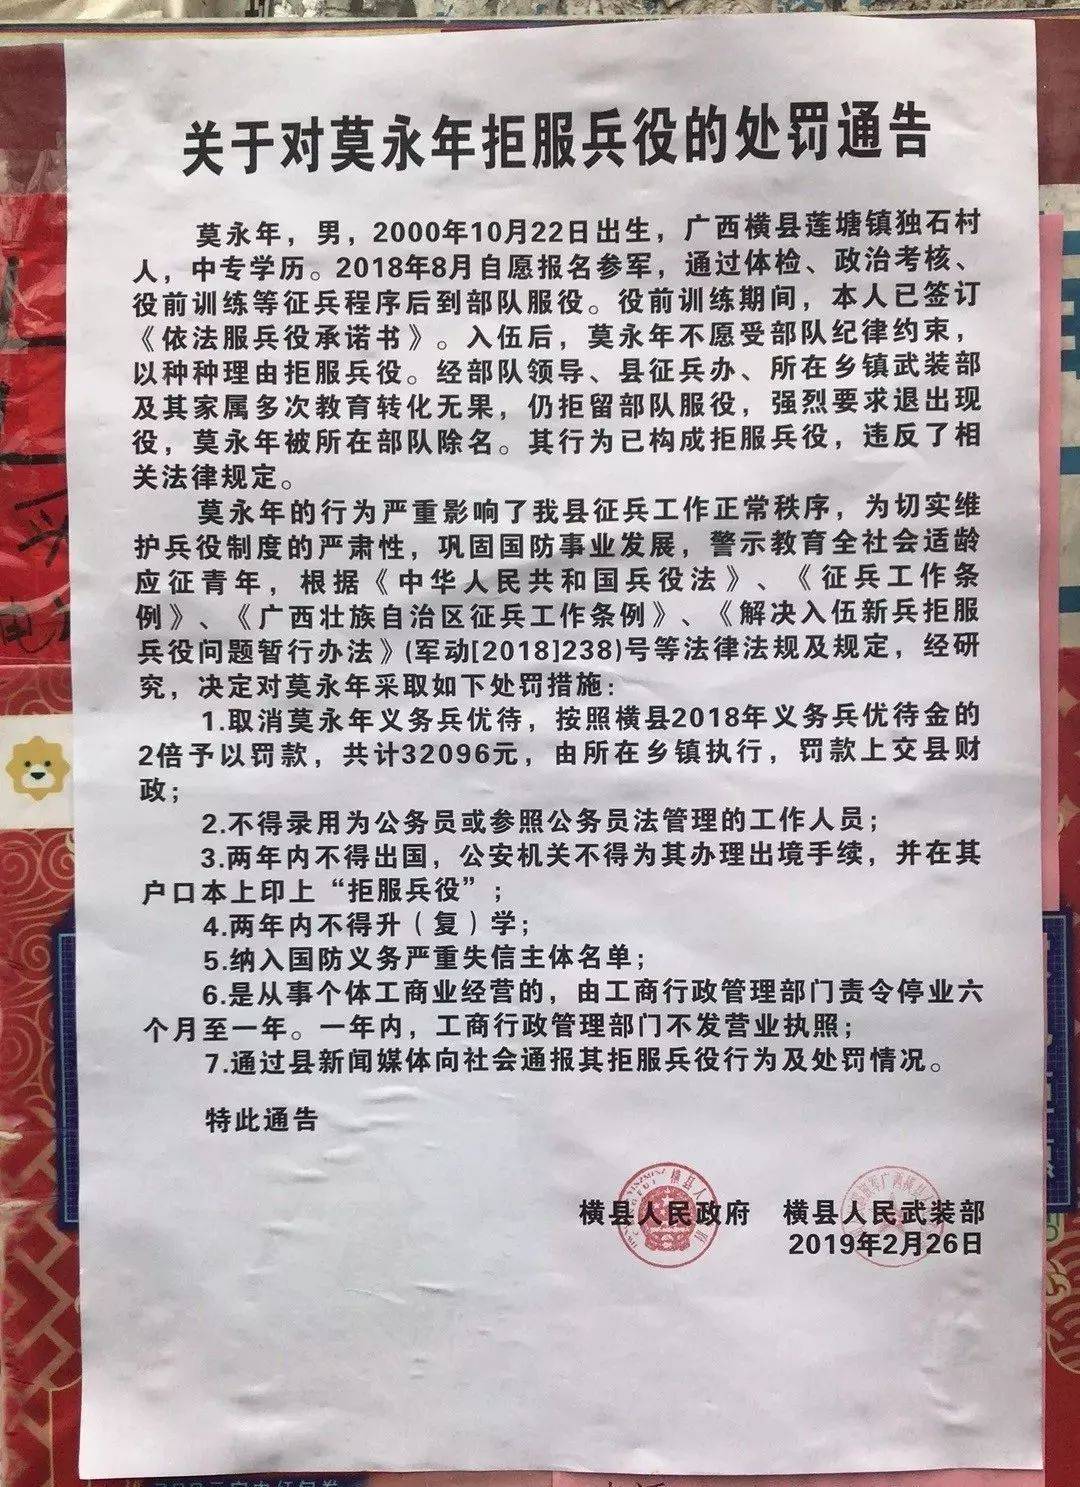 4,2019年2月26日,广西南宁横县三名青年因拒服兵役被实名制批判